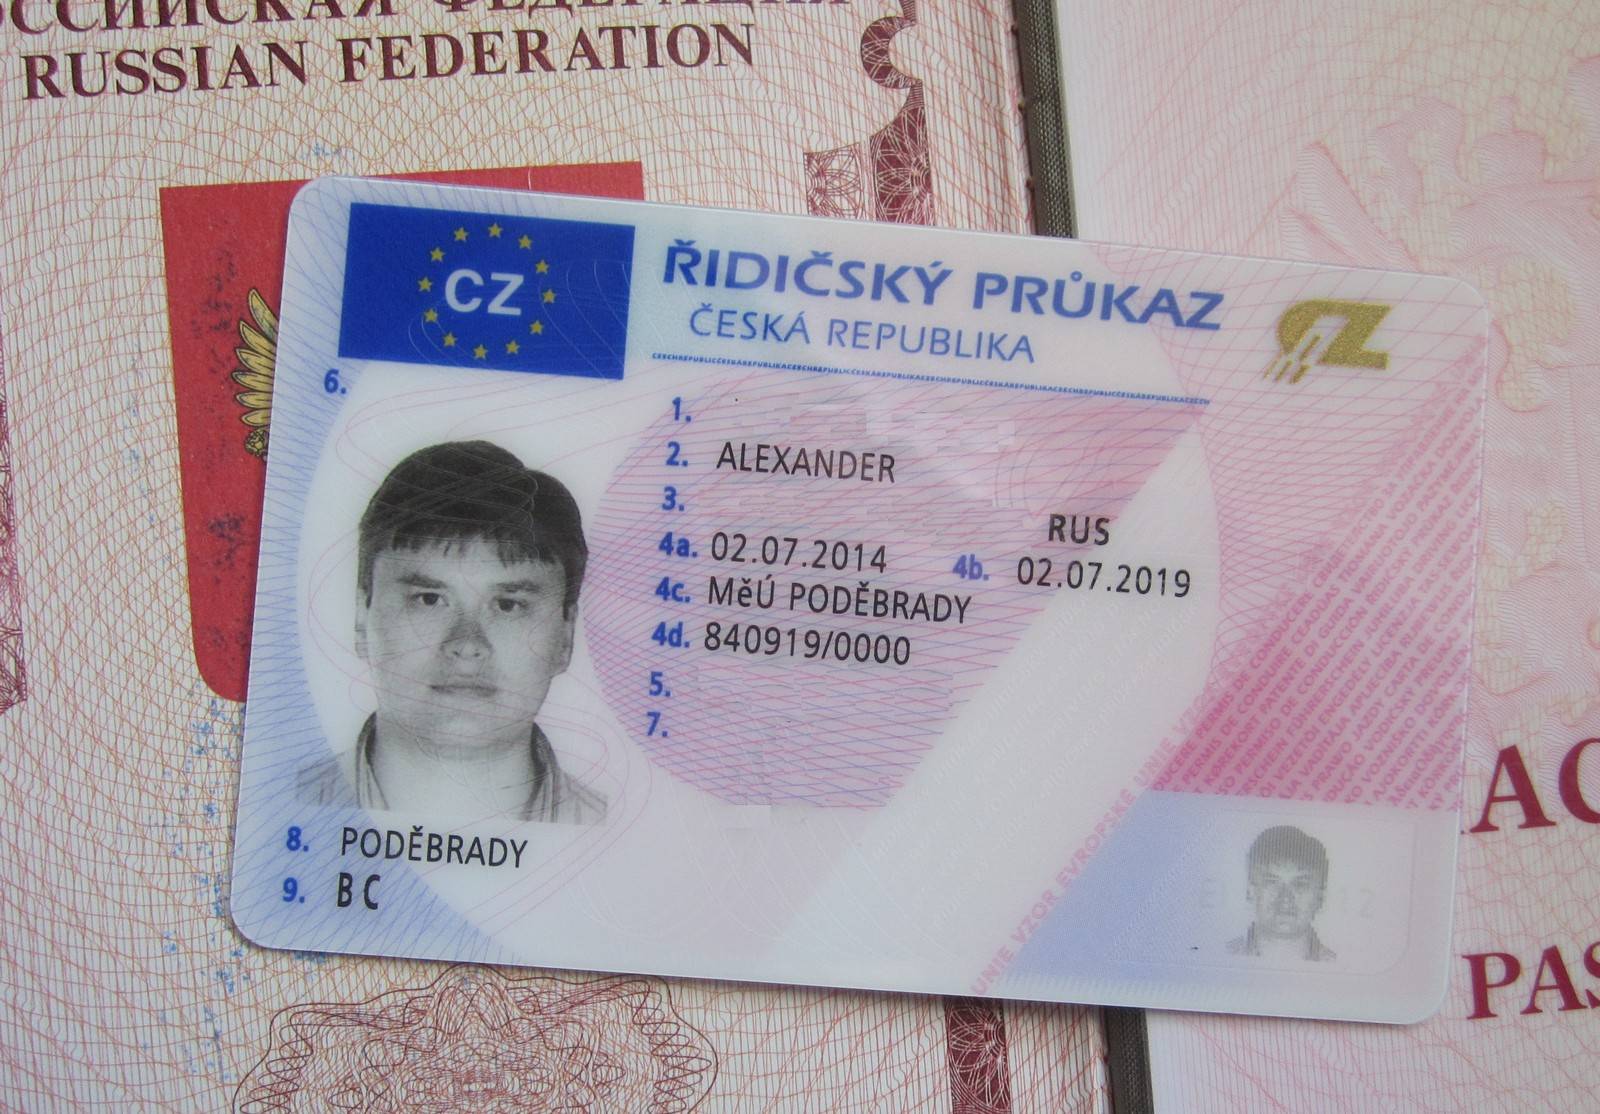 Эмиграция из россии в чехию: получение вида на жительство, как иммигрировать из россии или соседних стран на пмж